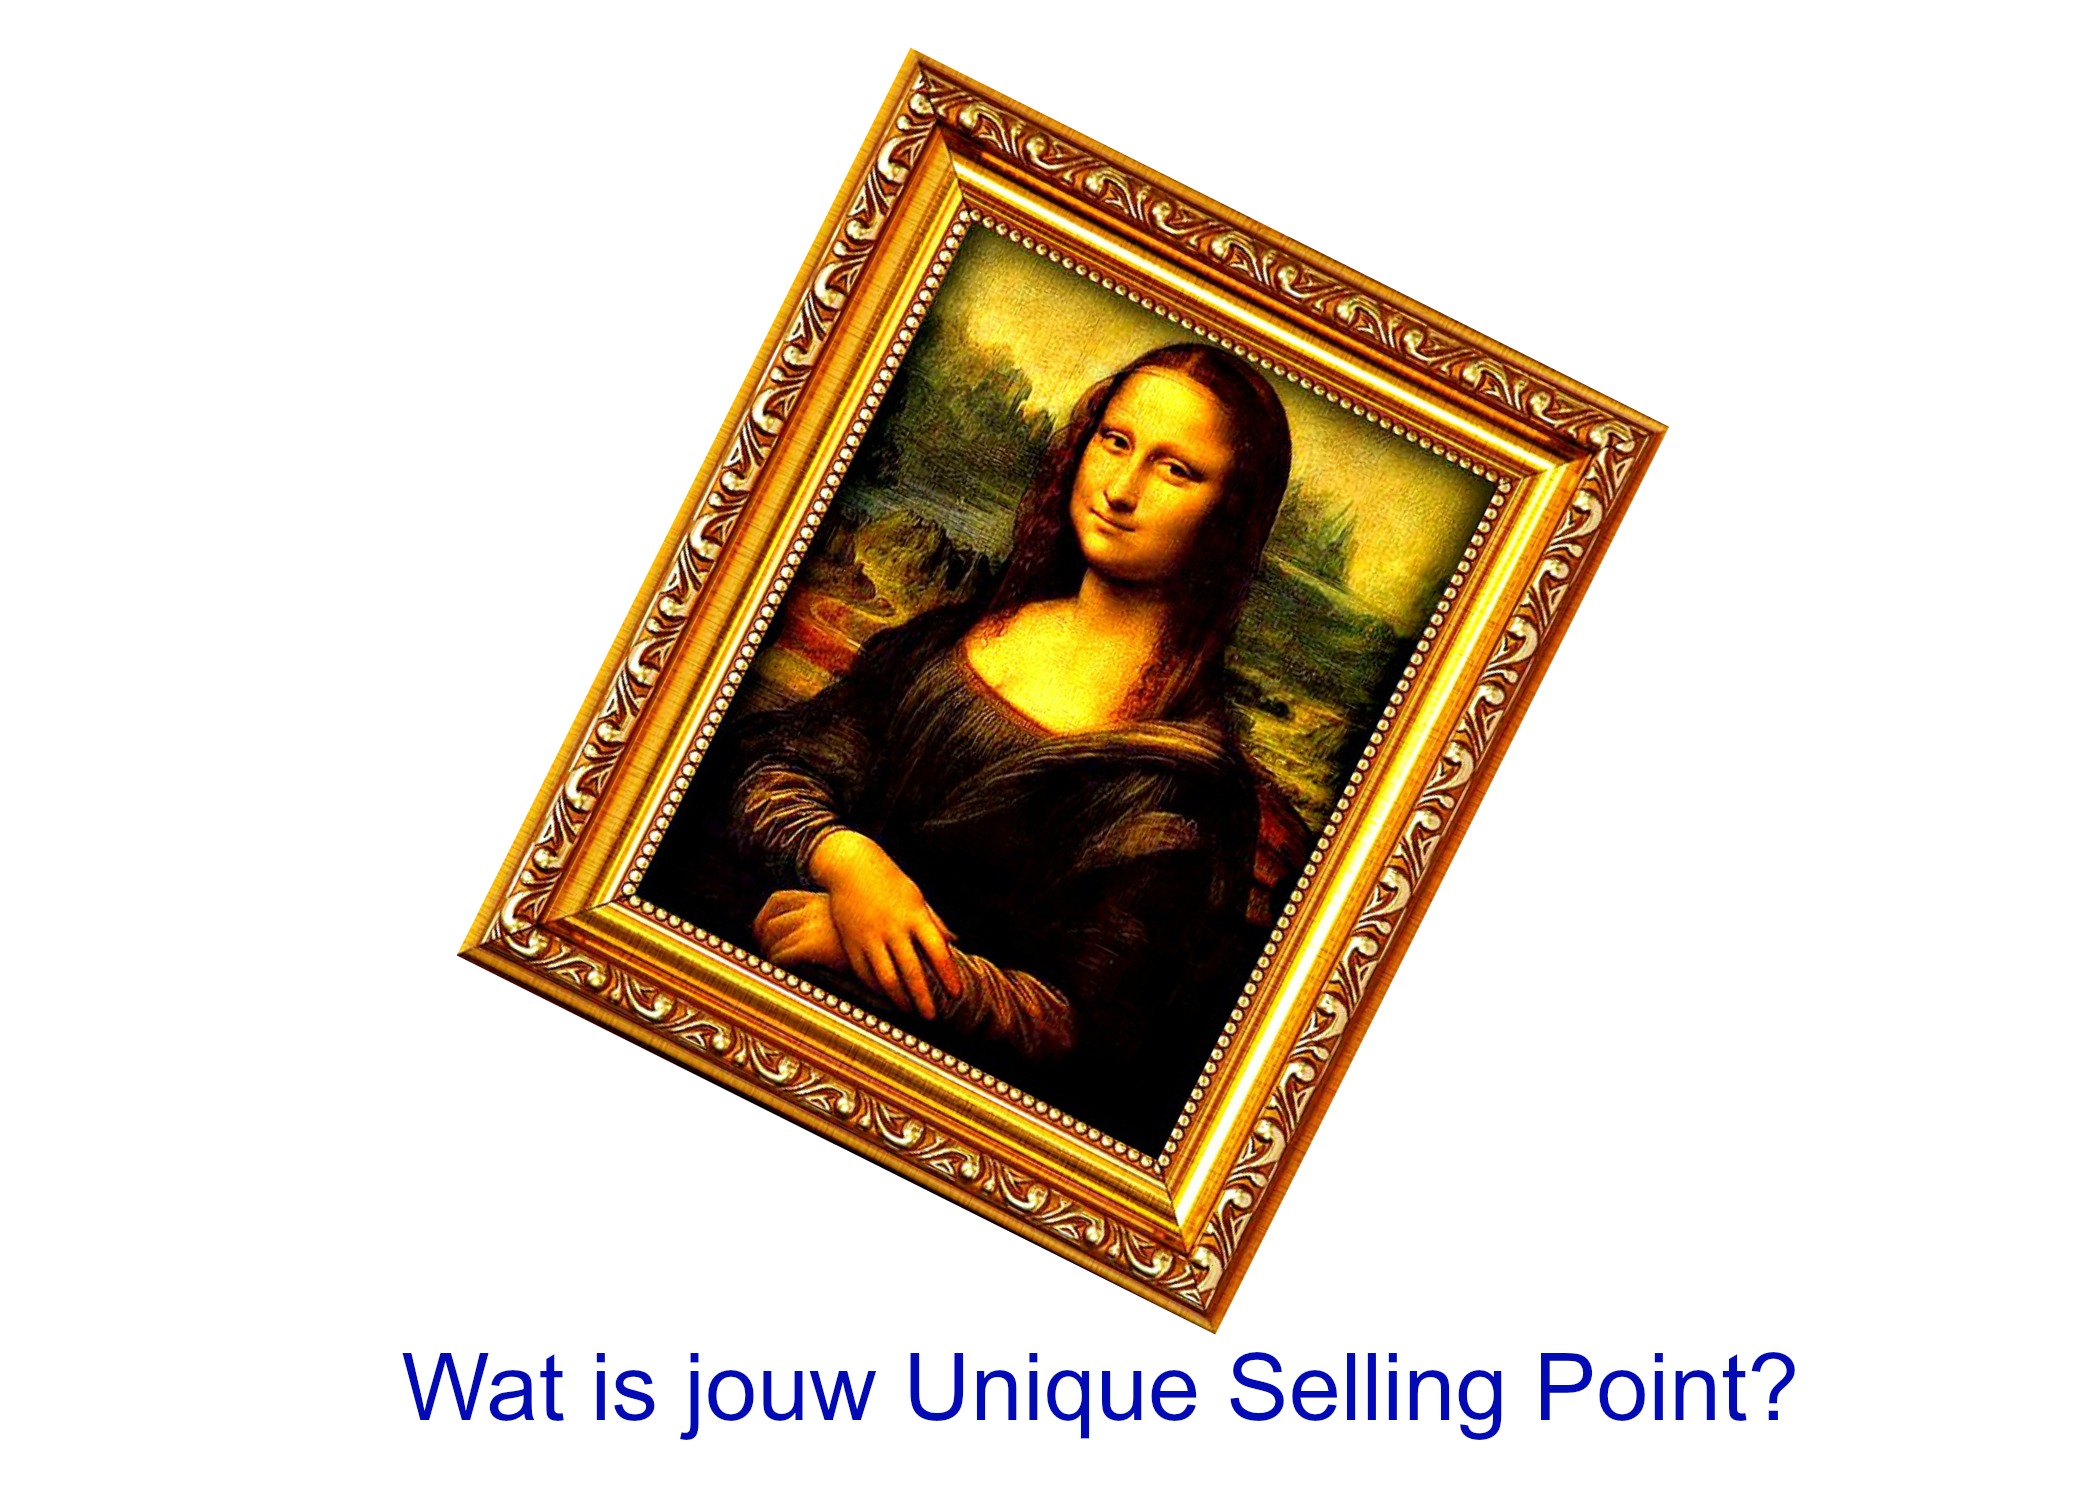 Heb jij net zulke mooie Unique Selling Points als Mona Lisa?